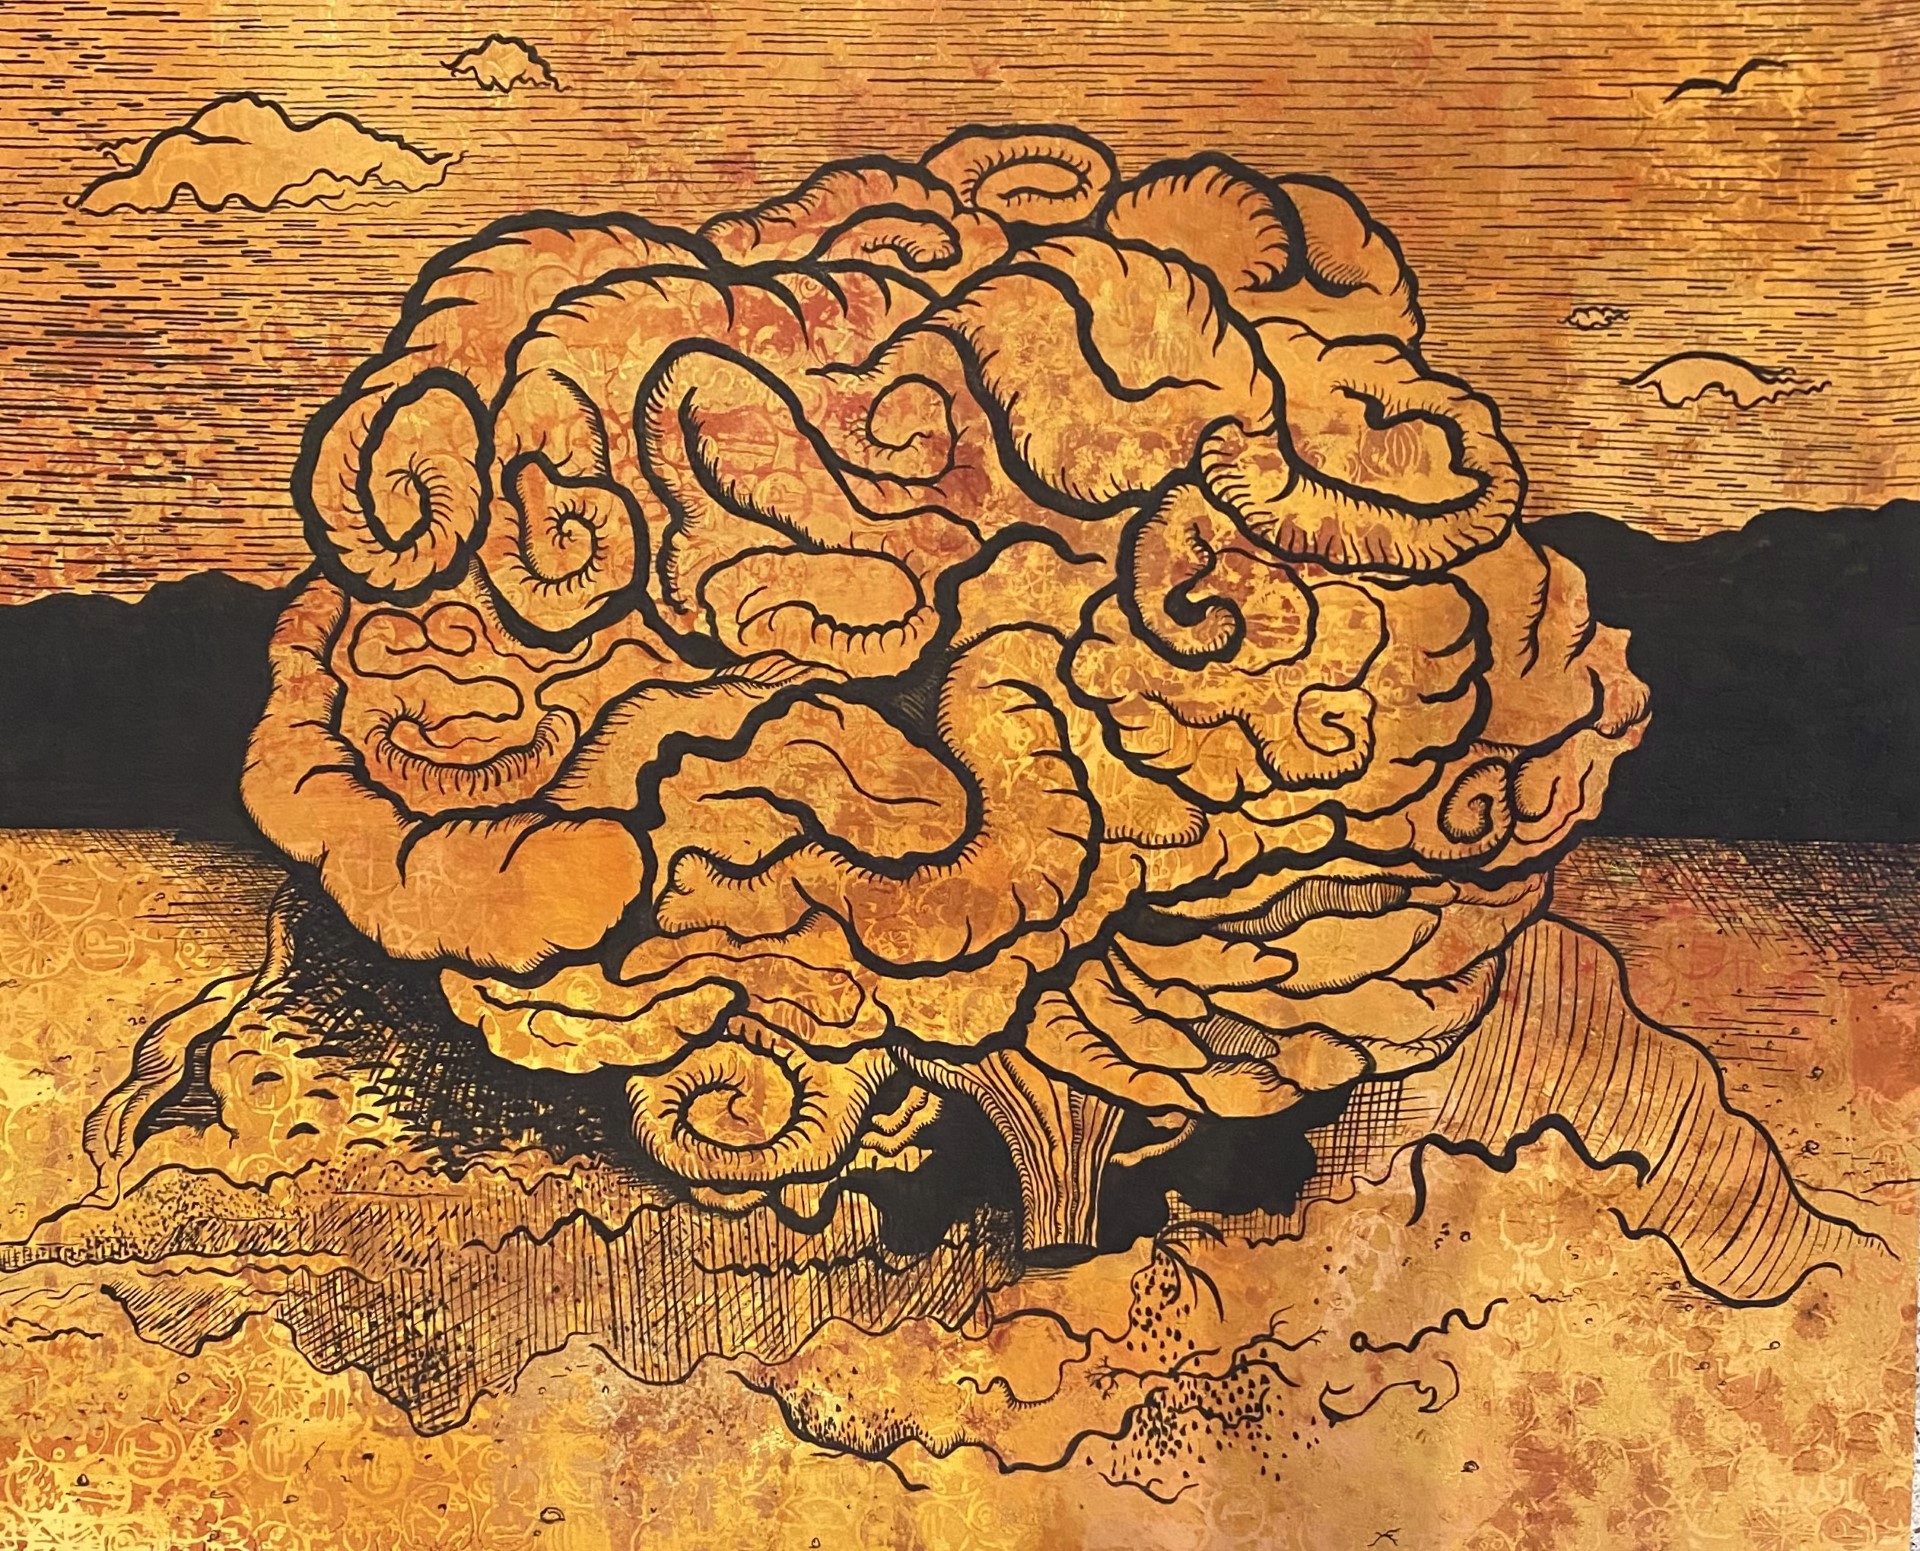 Large Brain by Jill Slaymaker